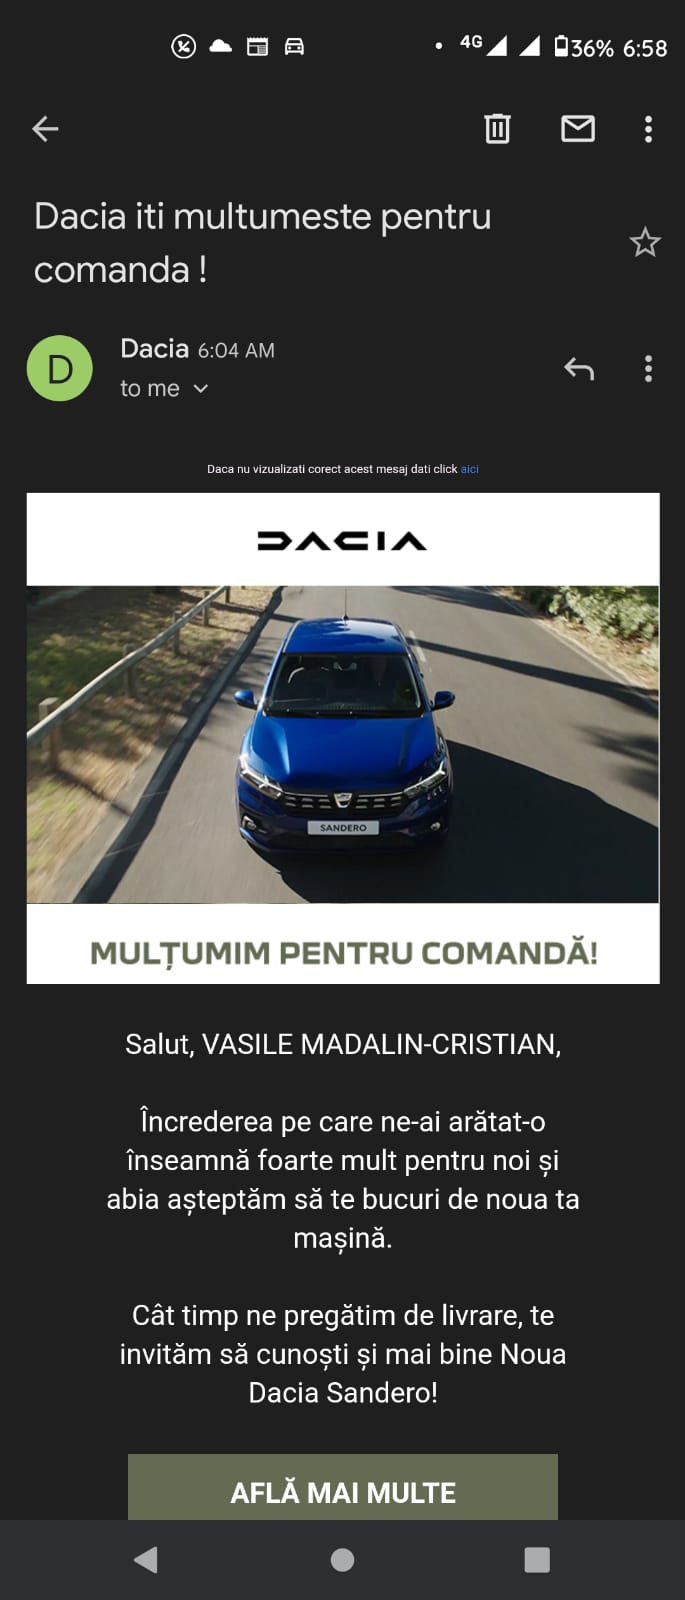 mail multumire comnanda Dacia